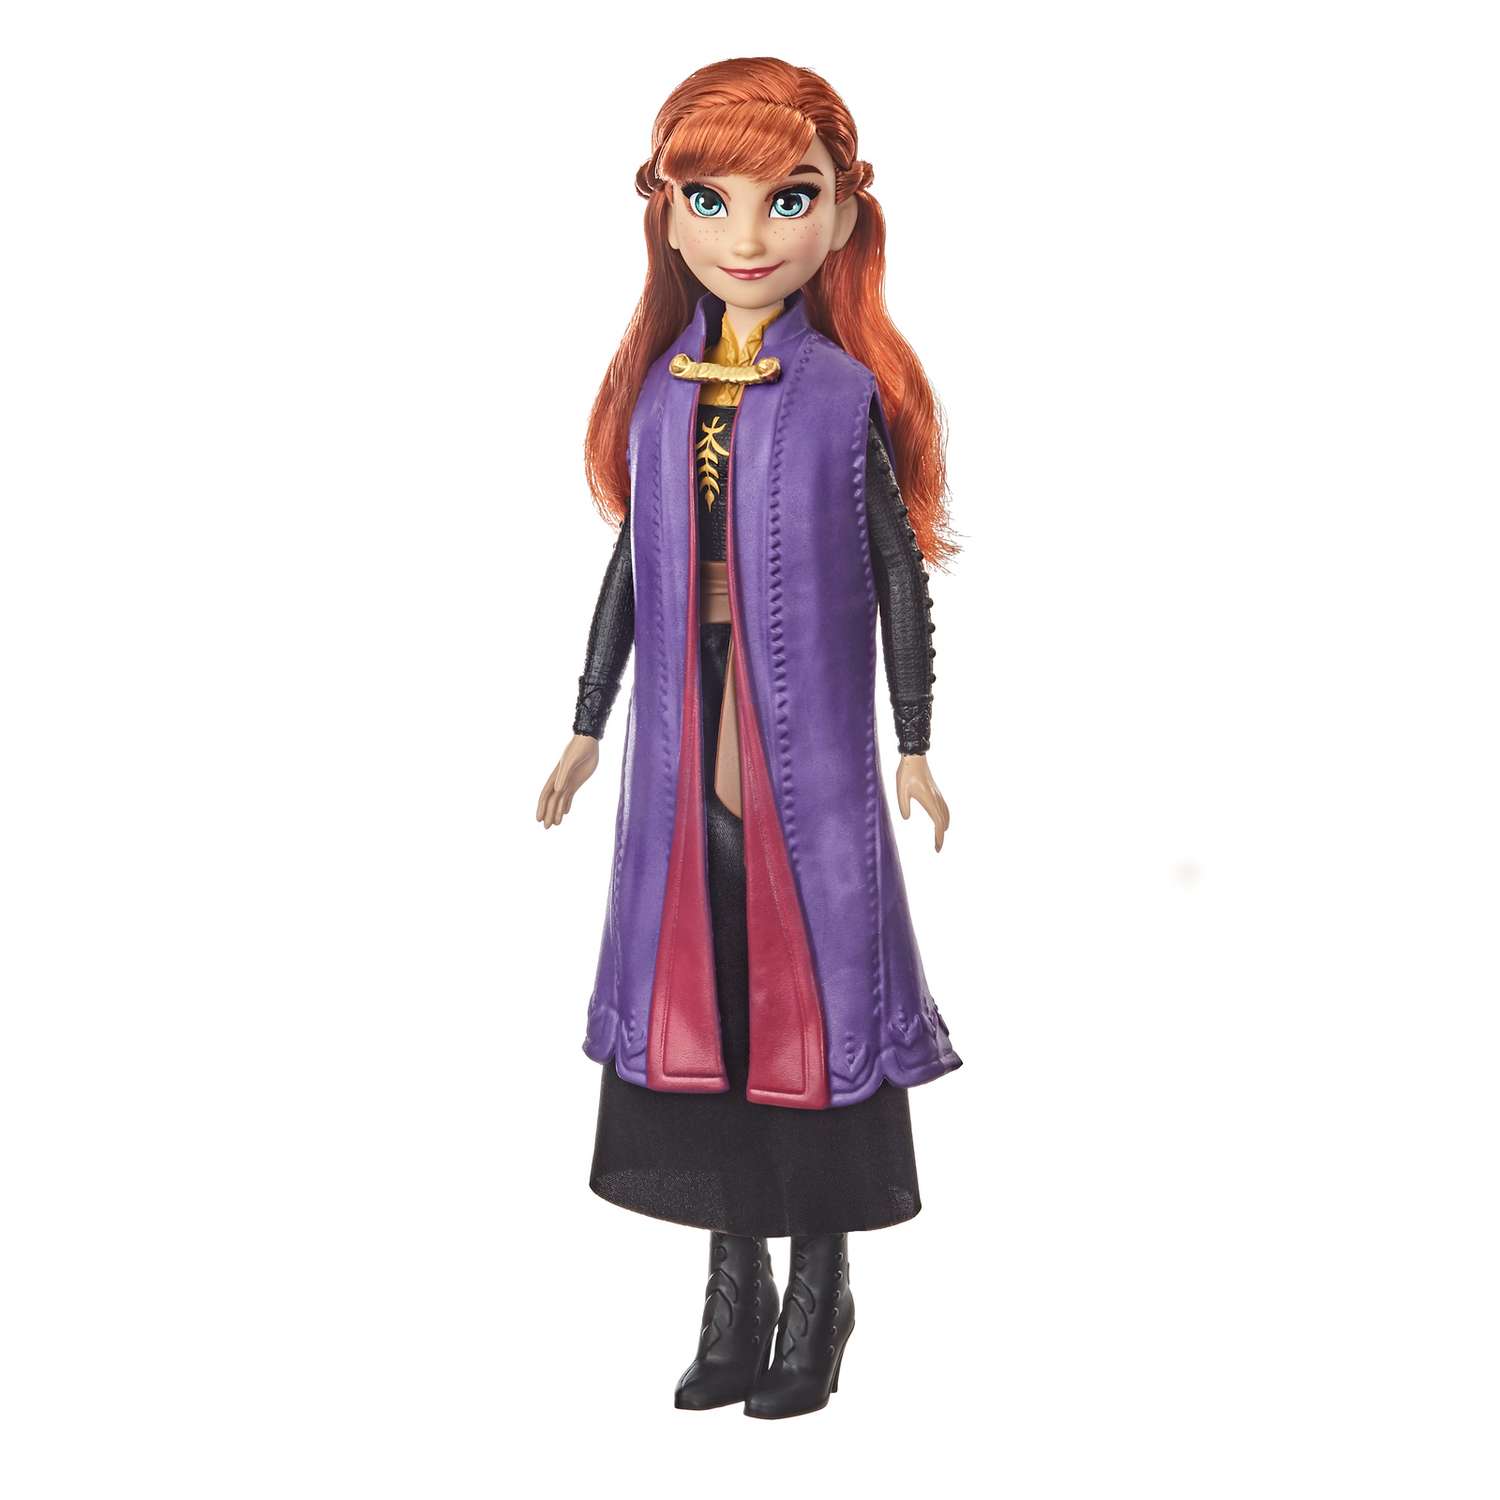 Кукла Disney Frozen базовая в ассортименте E90215L00 E90215L0 - фото 2